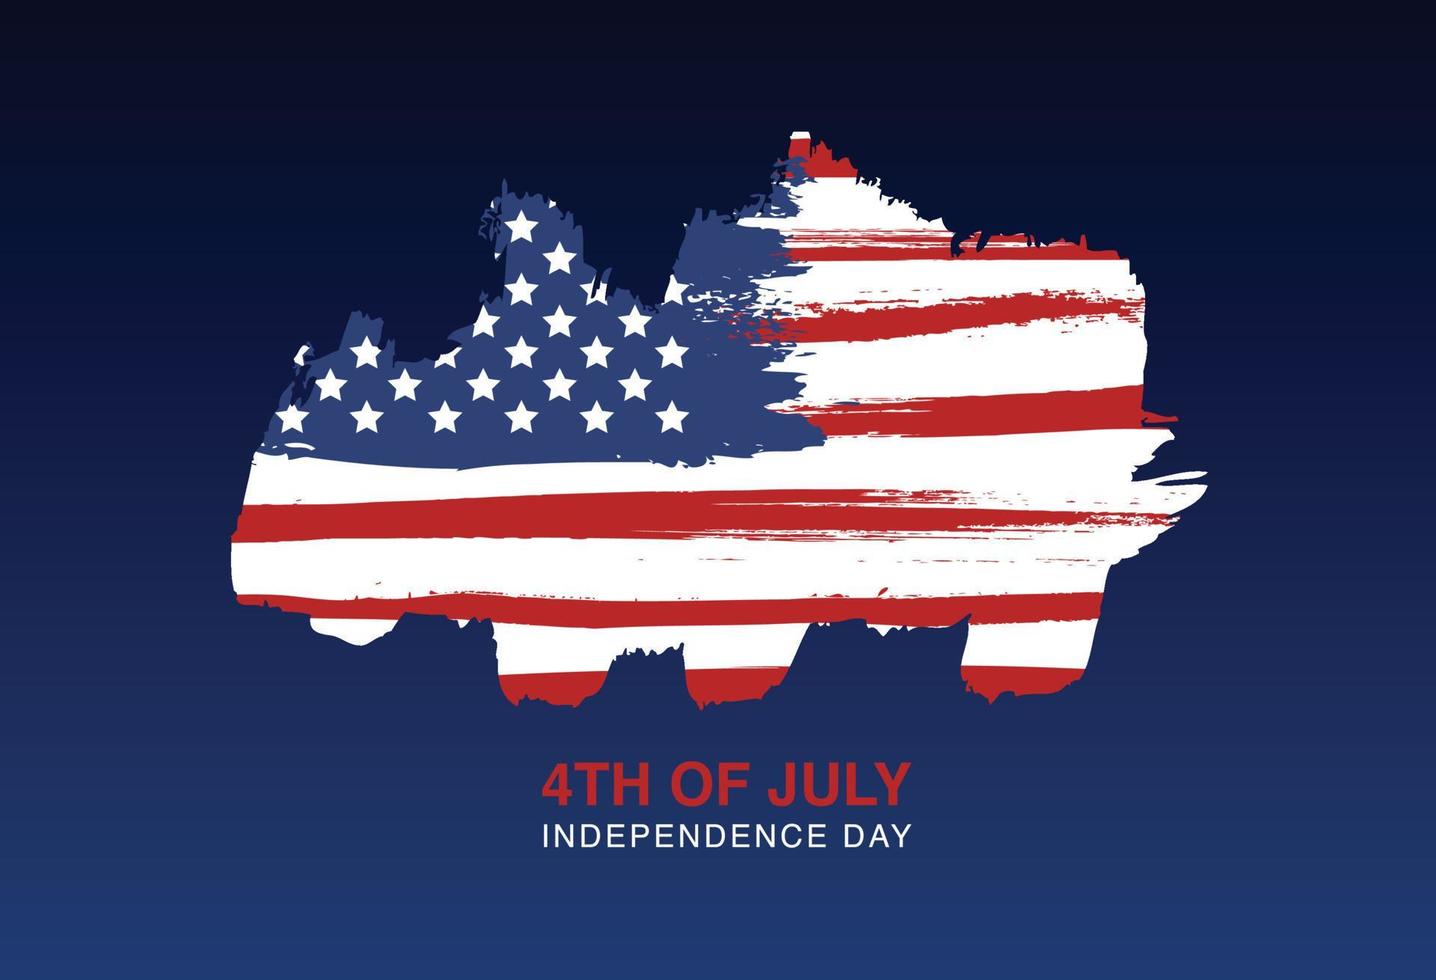 día de la independencia de los estados unidos, 4 de julio. bandera grunge de estados unidos. vector